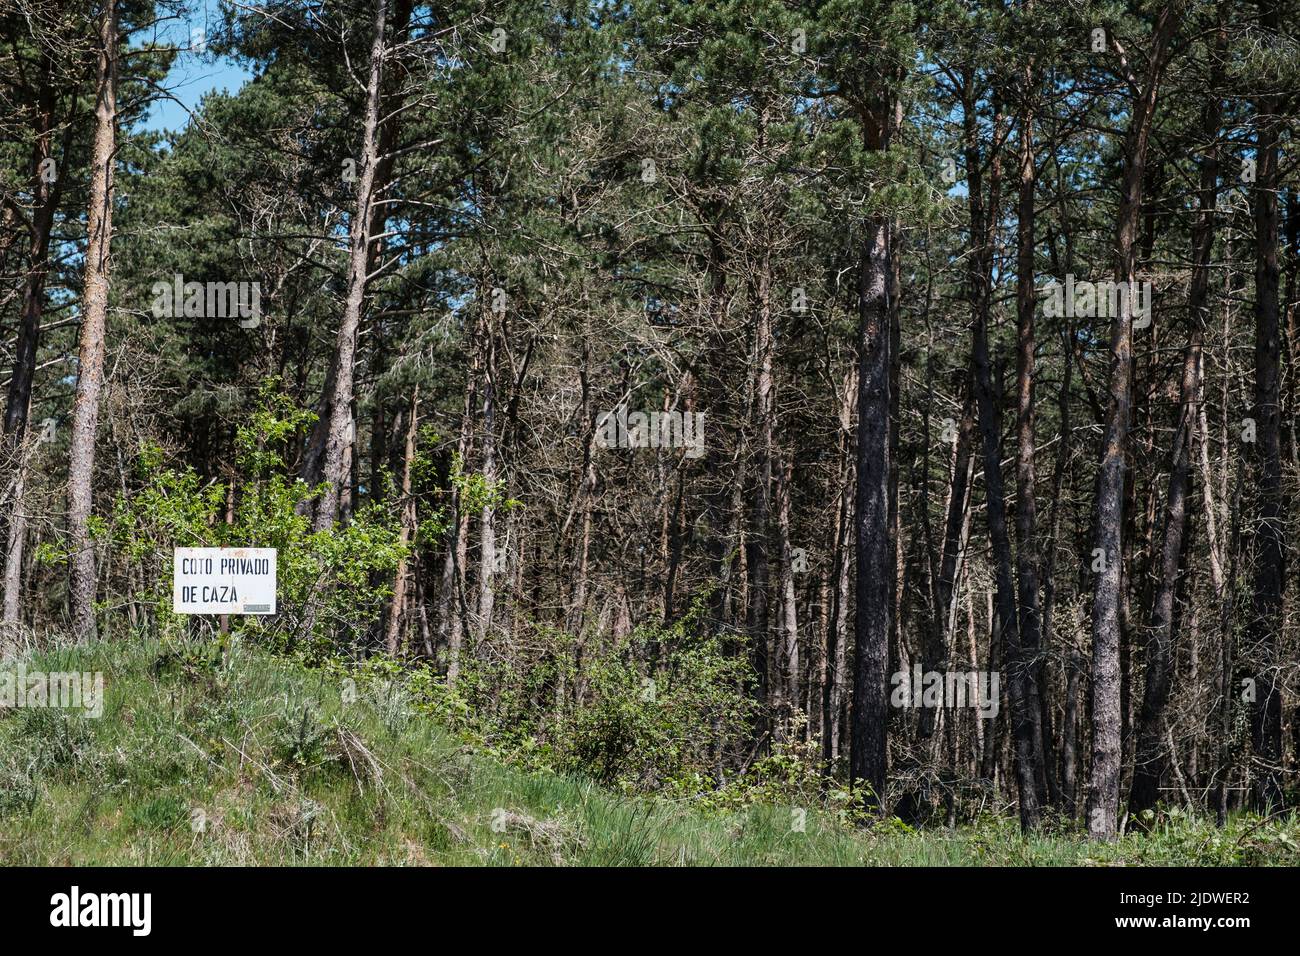 Spanien, Camino de Santiago. Schild mit der Bezeichnung eines privaten Jagdreservaten, angrenzend an den Camino in den Oca-Bergen, auf dem Weg nach San Juan de Ortega. Stockfoto